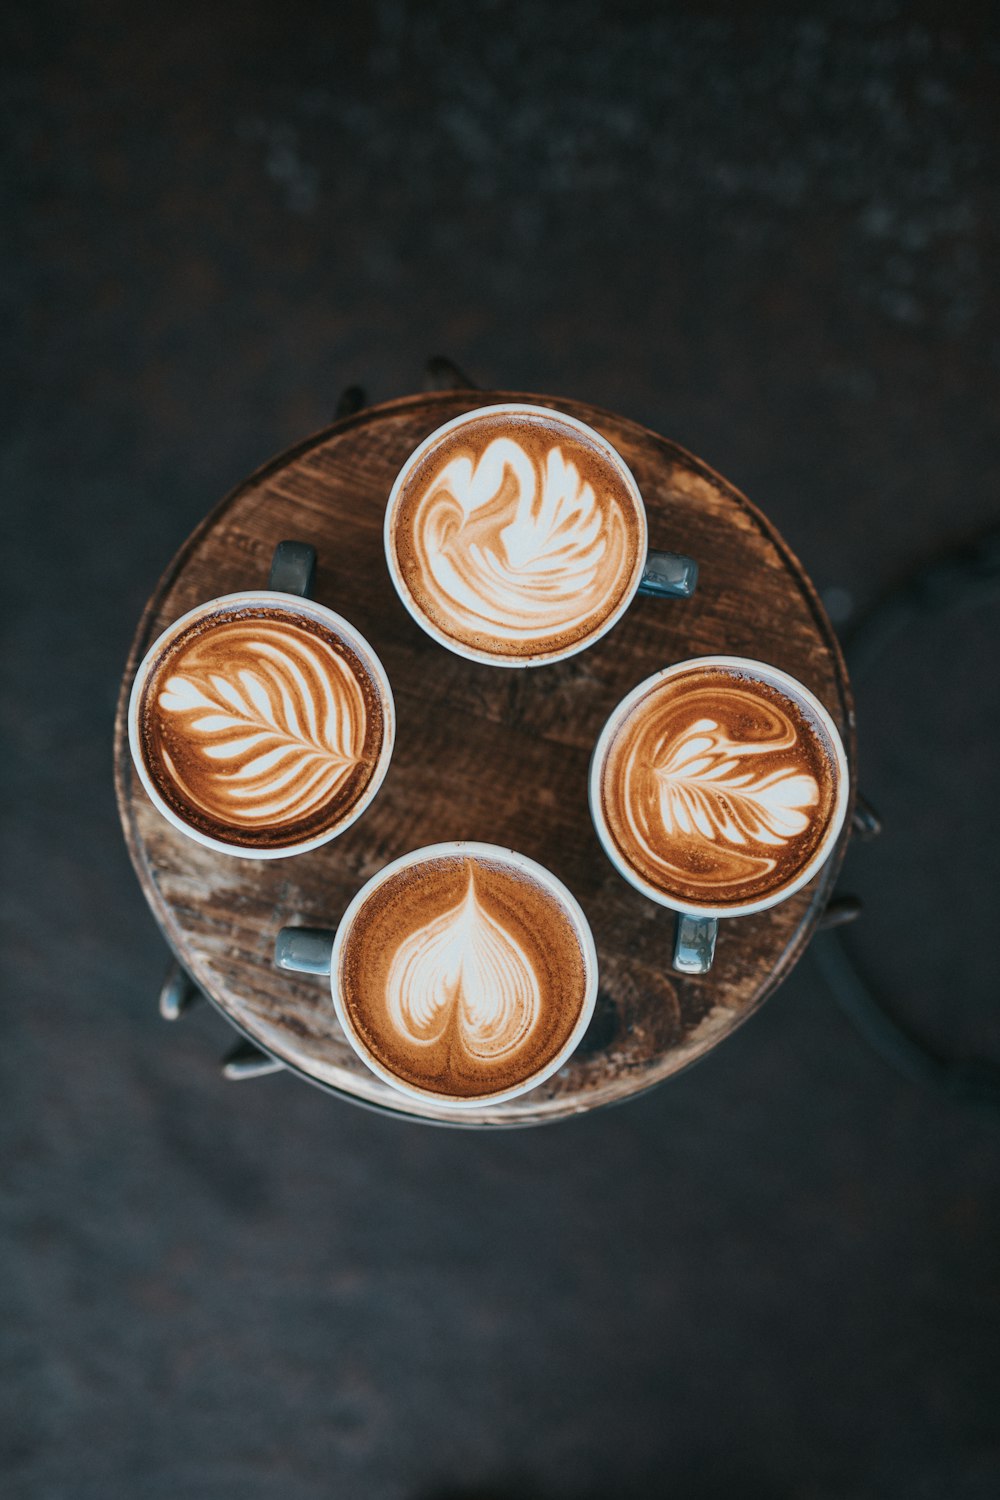 Photographie aérienne de café latte sur table